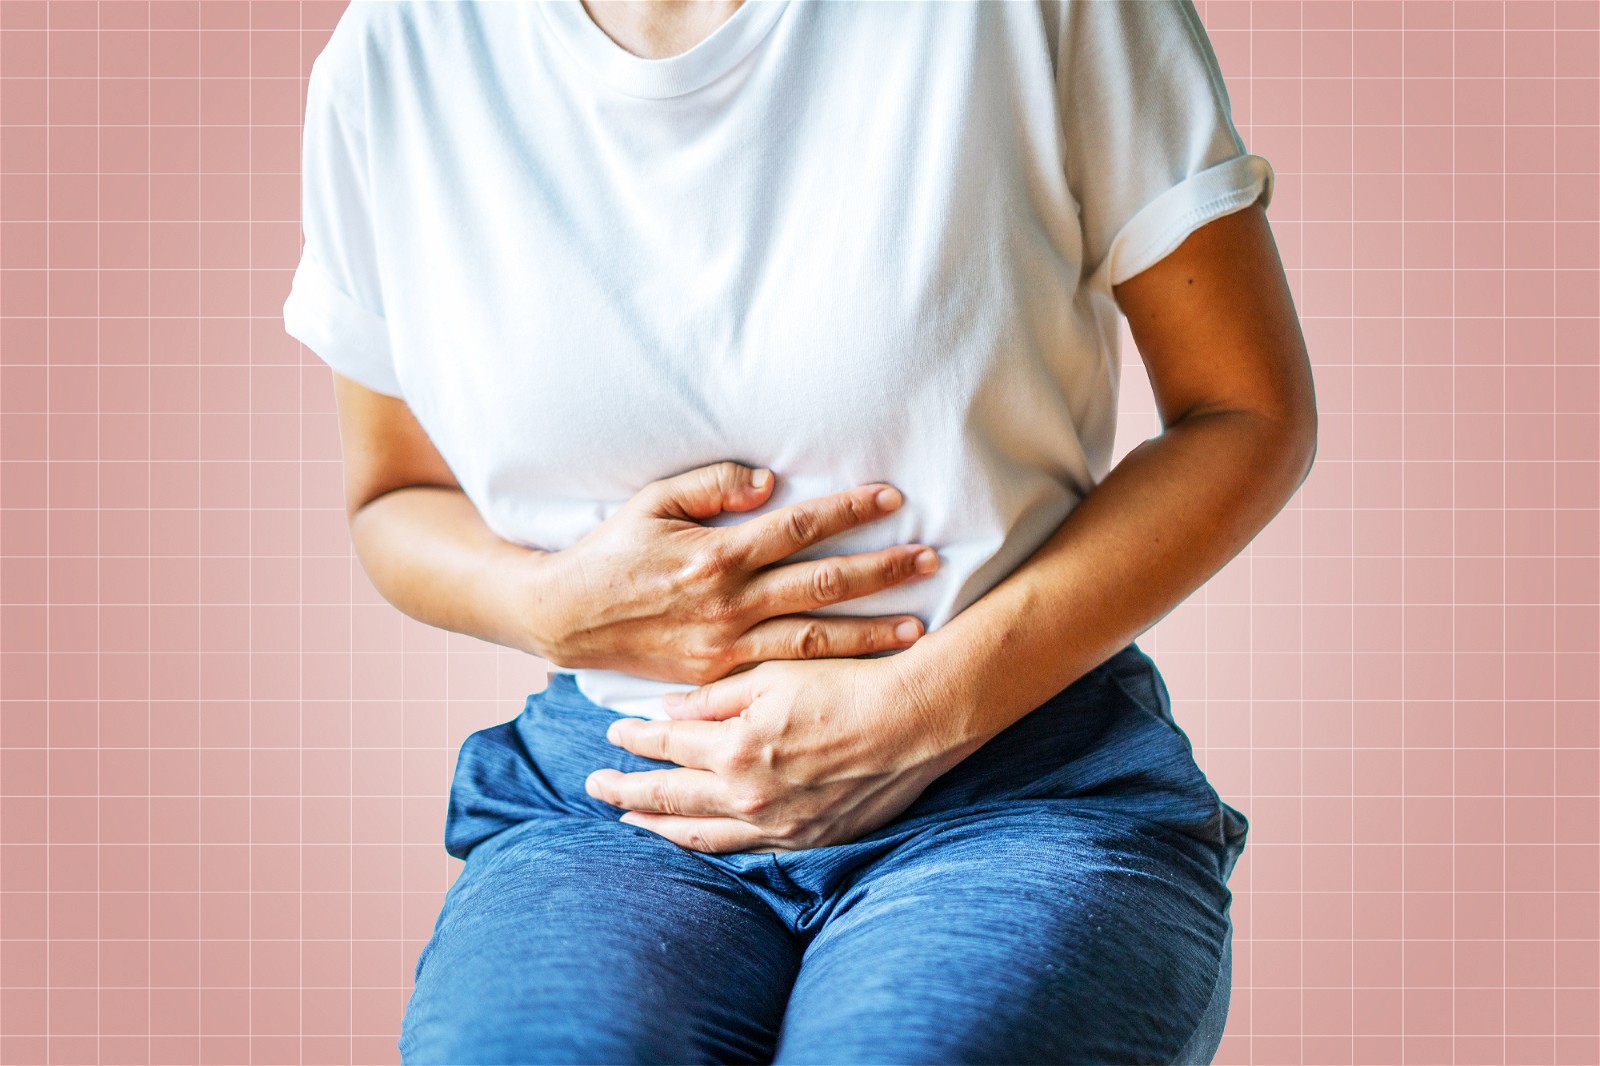 Nếu gặp tình trạng đau bụng, tiêu chảy kéo dài trong khi sử dụng thuốc, nên ngưng sử dụng ngay